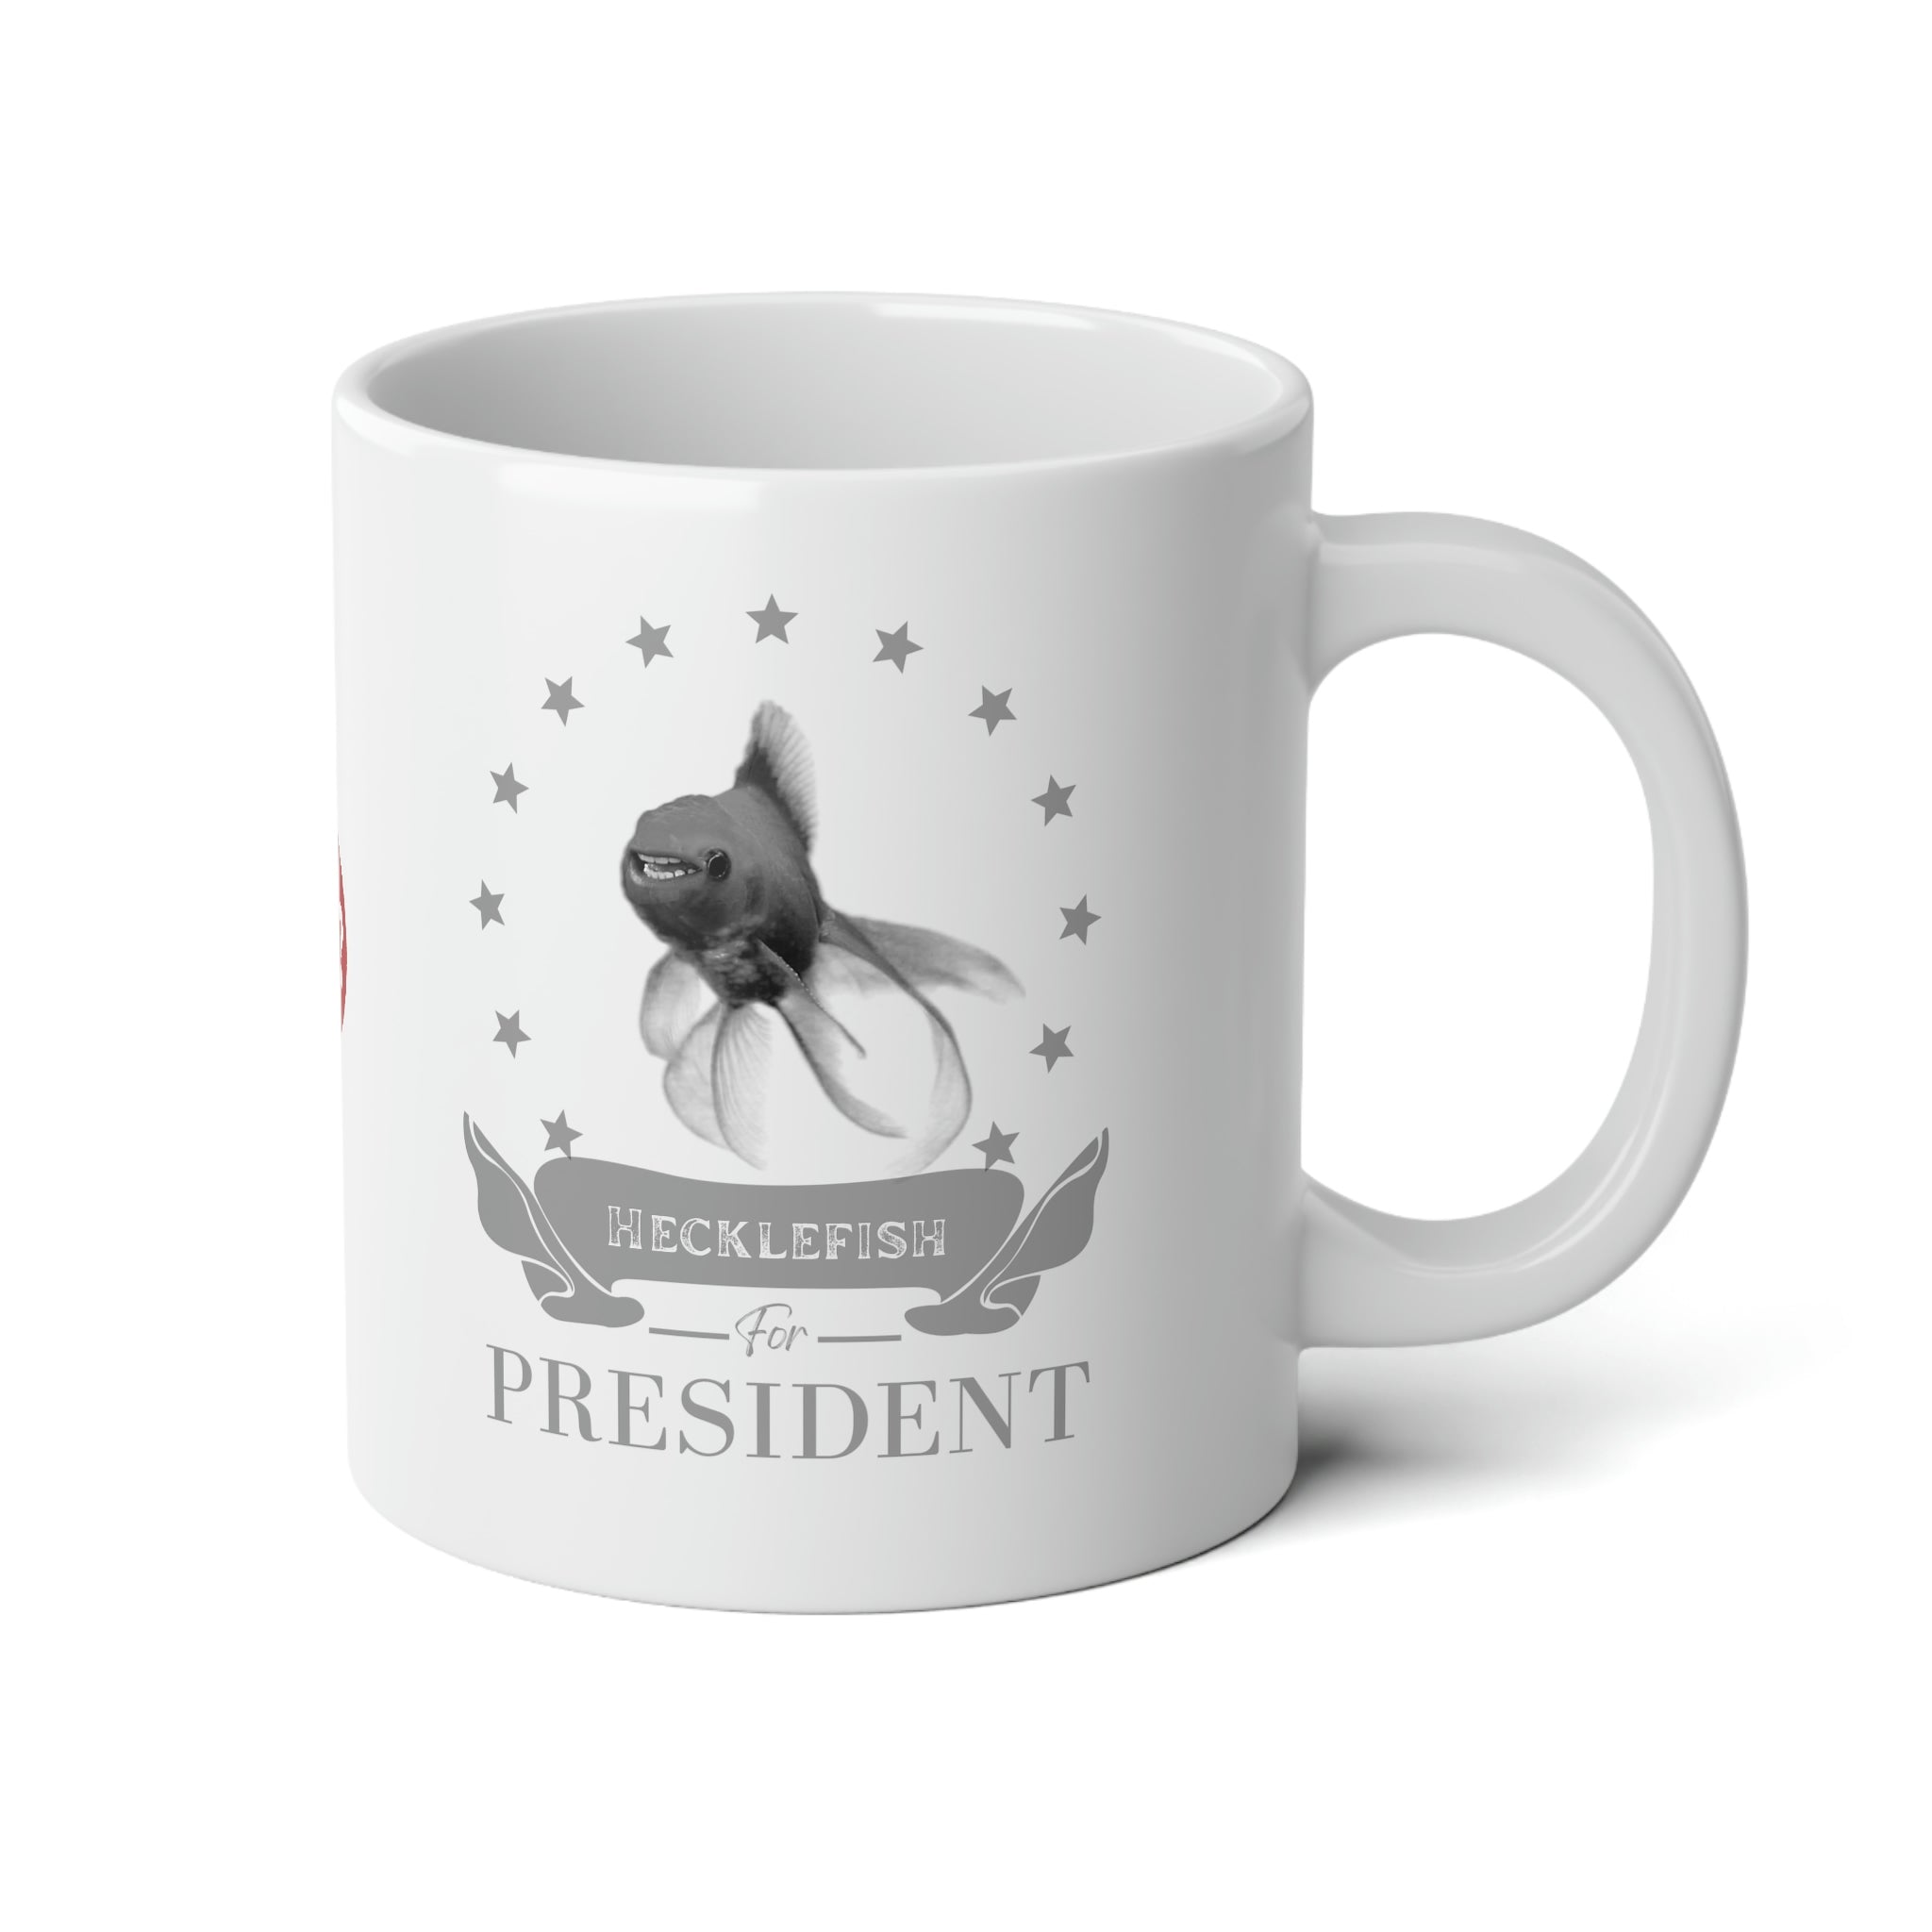 Hecklefish for President Jumbo Mug, 20oz-5